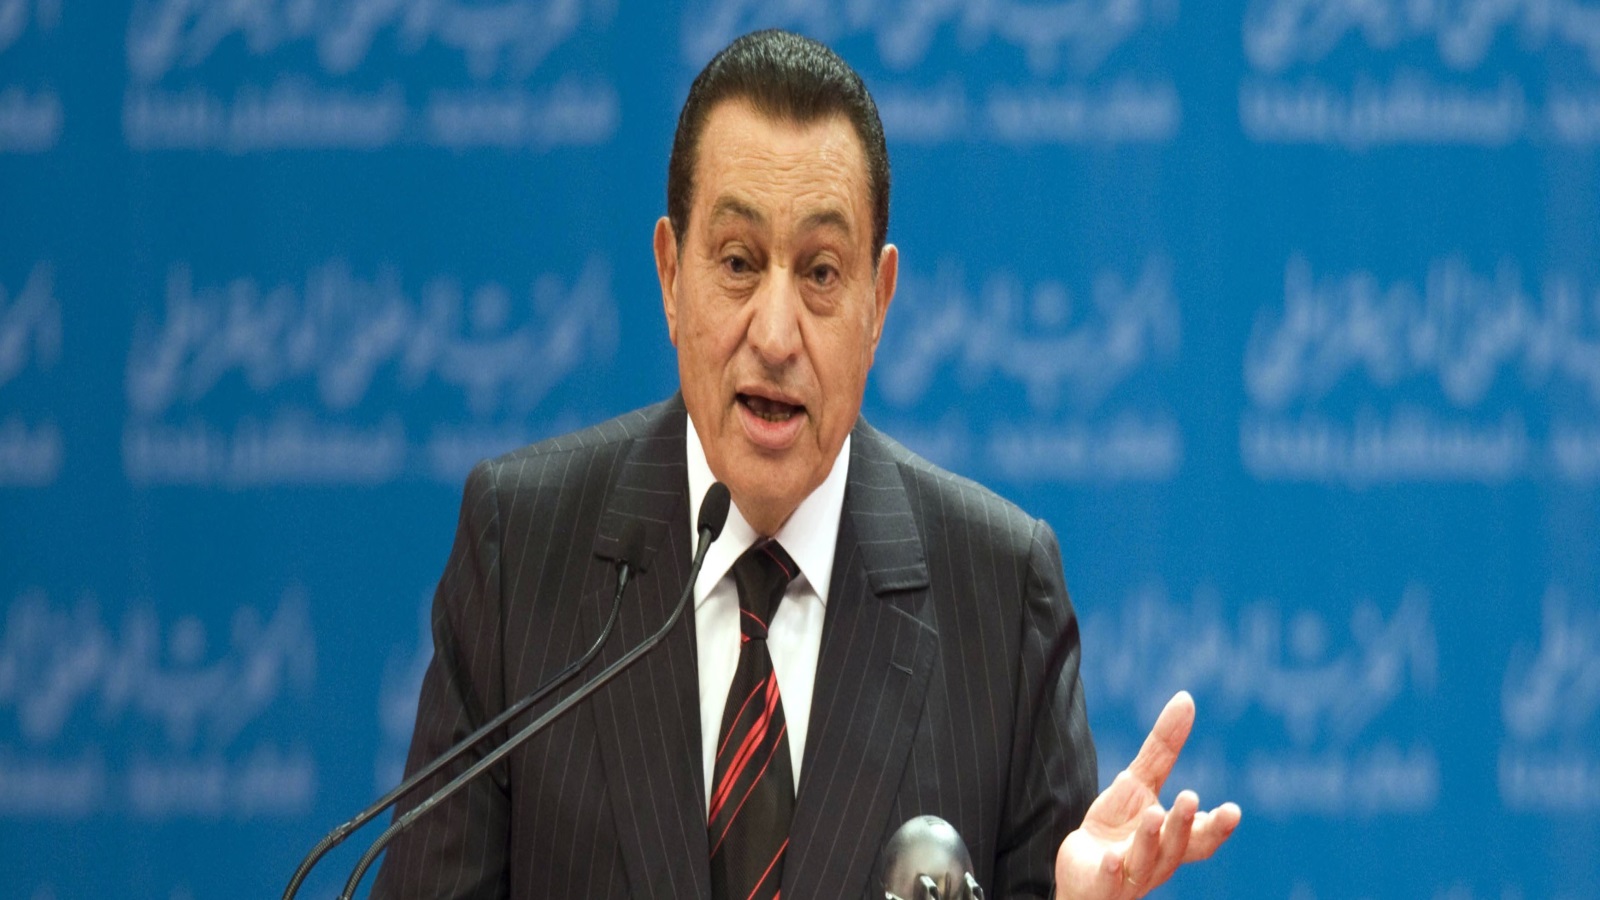 نجح عاكف في إحداث أزمة كبيرة لنظام مبارك، وأظهره أمام العالم أنه نظام مستبد يقمع الحريات، ويعتقل المطالبين بالإصلاح، فما كان من نظام مبارك إلا أن قرّر الإفراج عن الإخوان